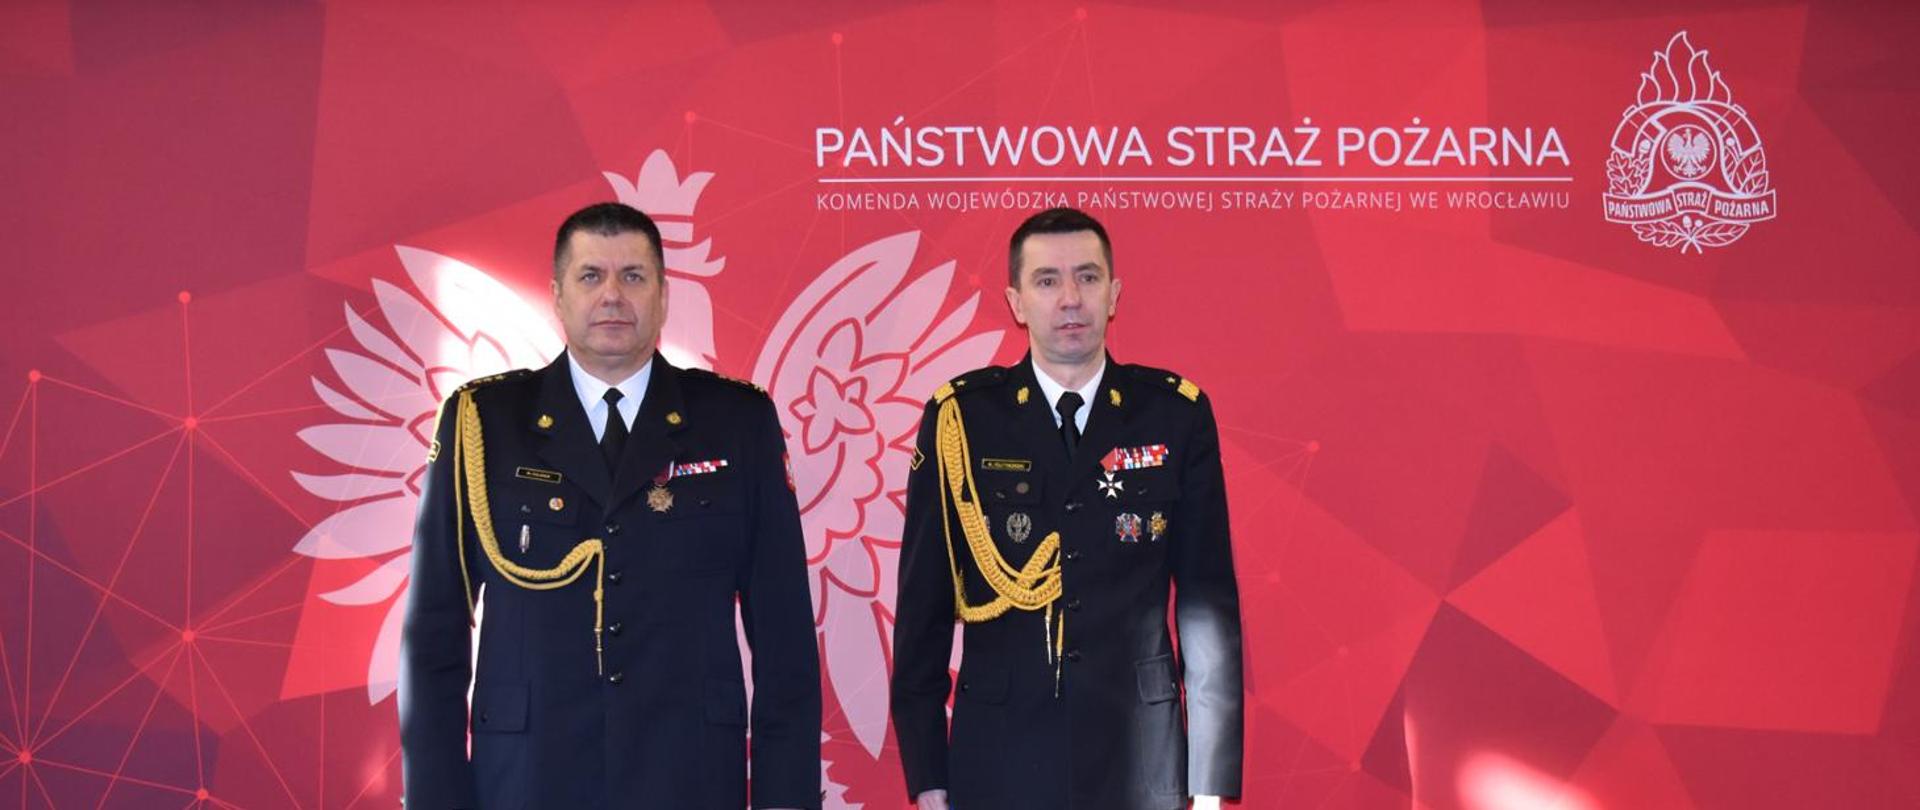 Komendant Główny i Dolnośląski Komendant Wojewódzki ustawieni na czerwonym tle z logiem Państwowej Straży Pożarnej